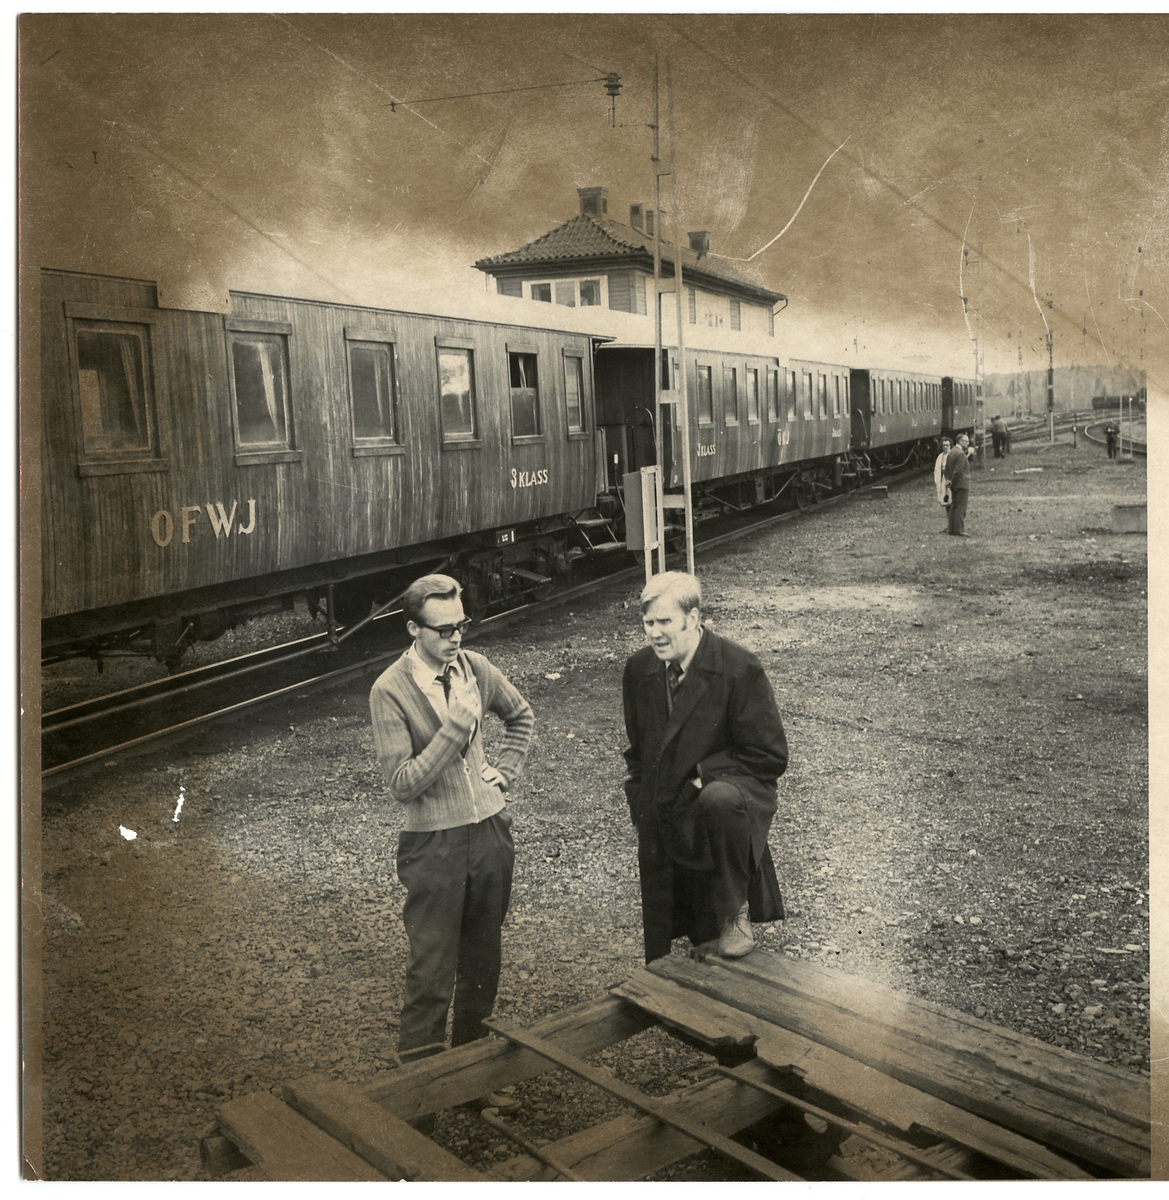 Samling av äldre järnvägsvagnar. Entusiasten Fredriksson och lokinspektor H. Halvarsson i samspråk medan tåget gör uppehåll på Grängesberg malmbangård.